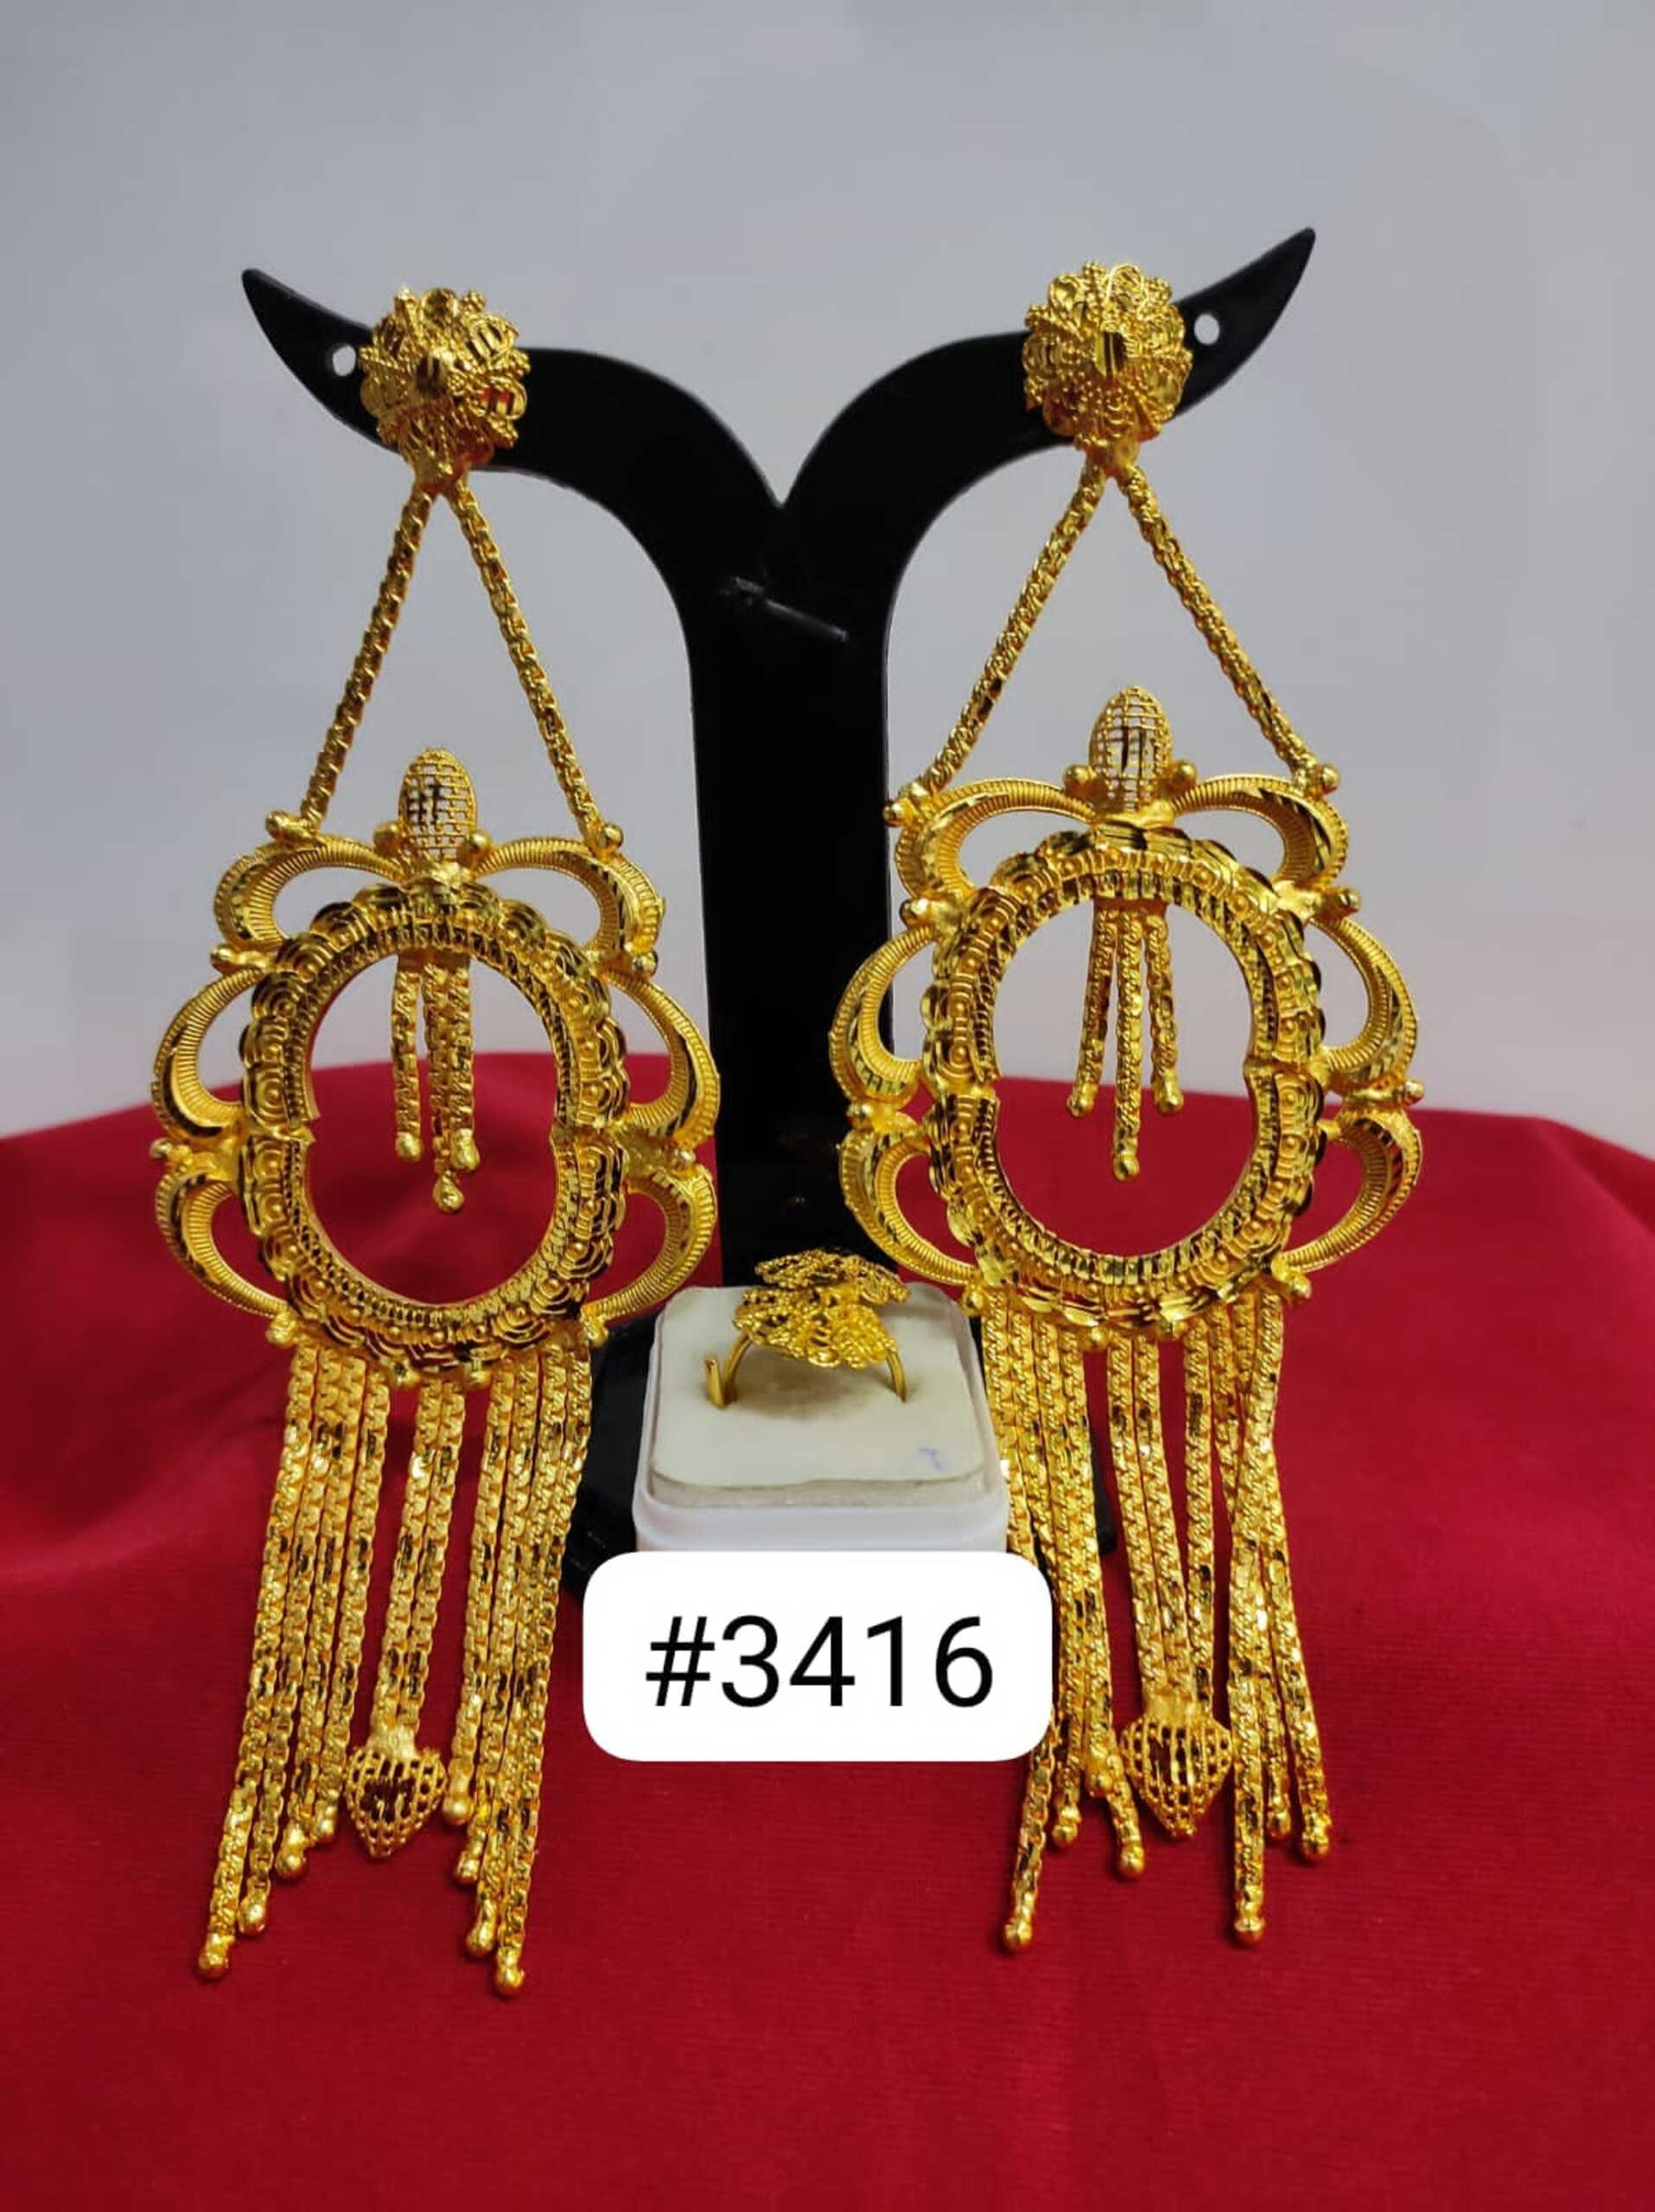 Share 206+ gold earring kanbala design latest